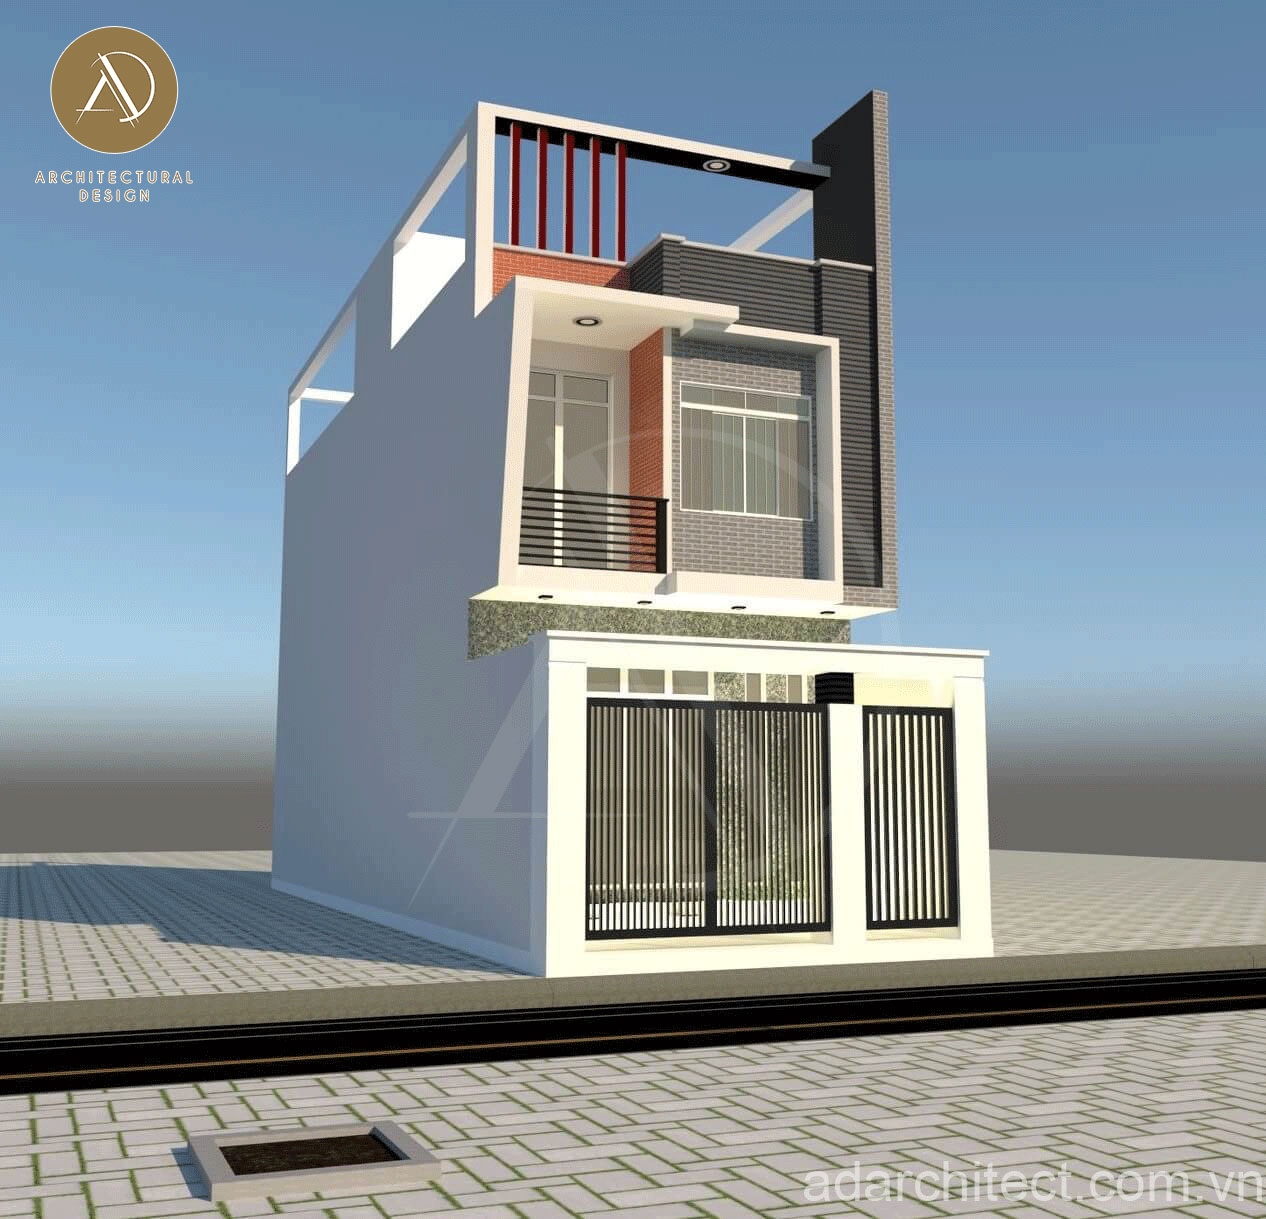 mặt tiền nhà phố 2 tầng đẹp: nhà có cửa sổ, ban công và sân thượng thoáng mát, màu sắc đơn giản, hiện đại